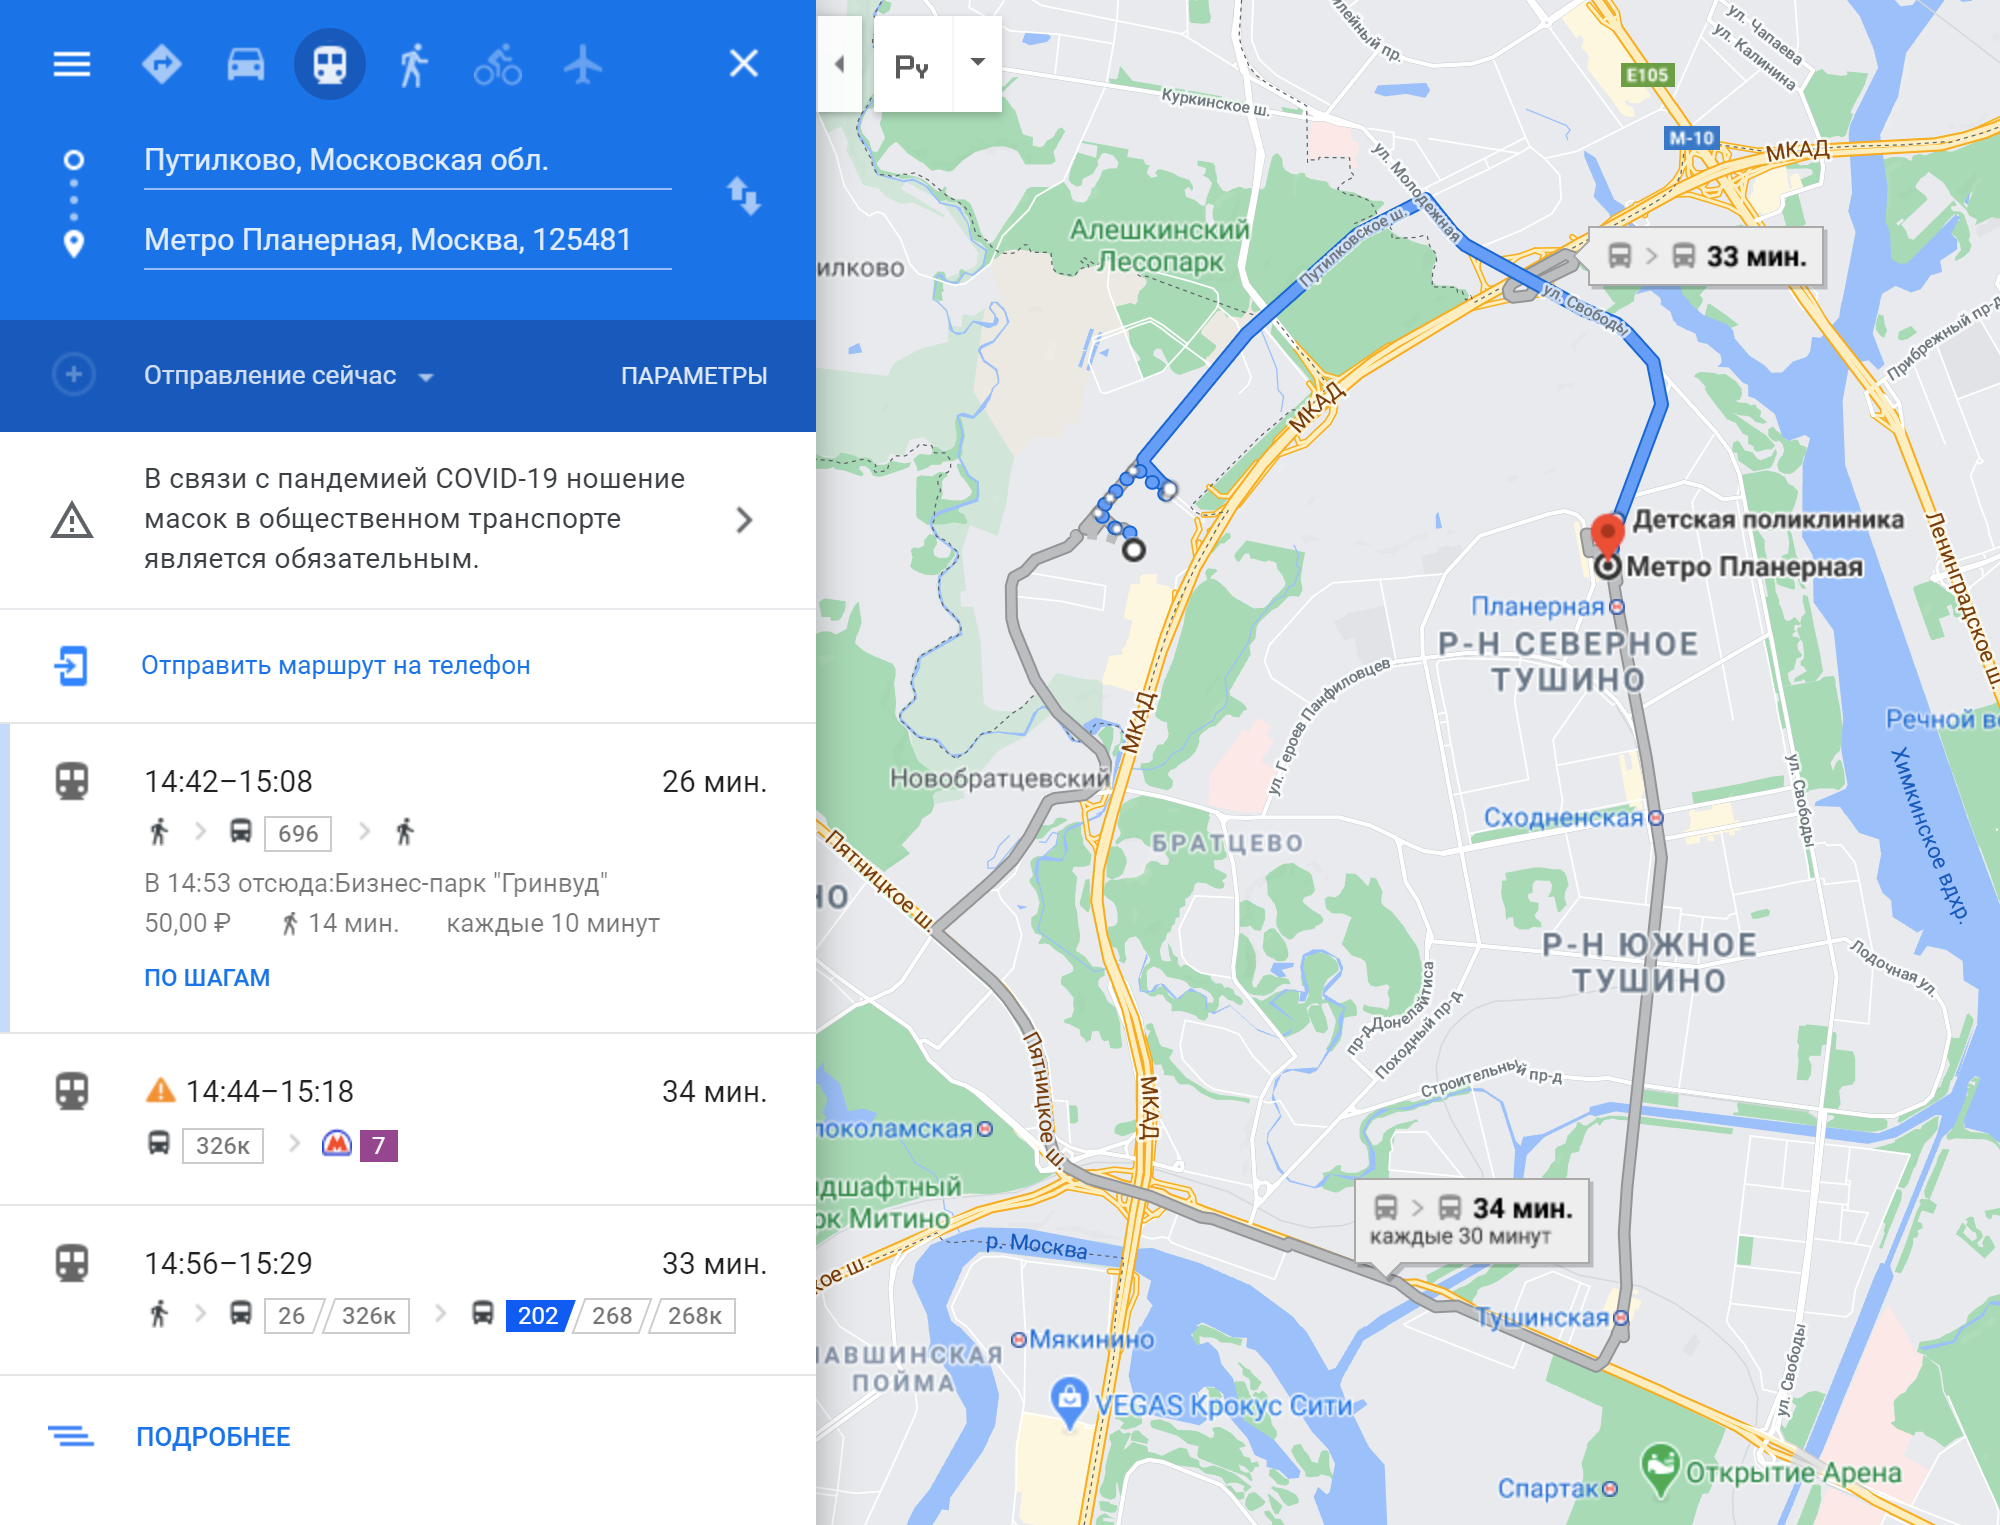 «Гугл-карты» предлагают 3 маршрута на общественном транспорте от Путилкова до «Планерной». Без пробок они отнимут от 25 до 38 минут, но пробки есть почти всегда